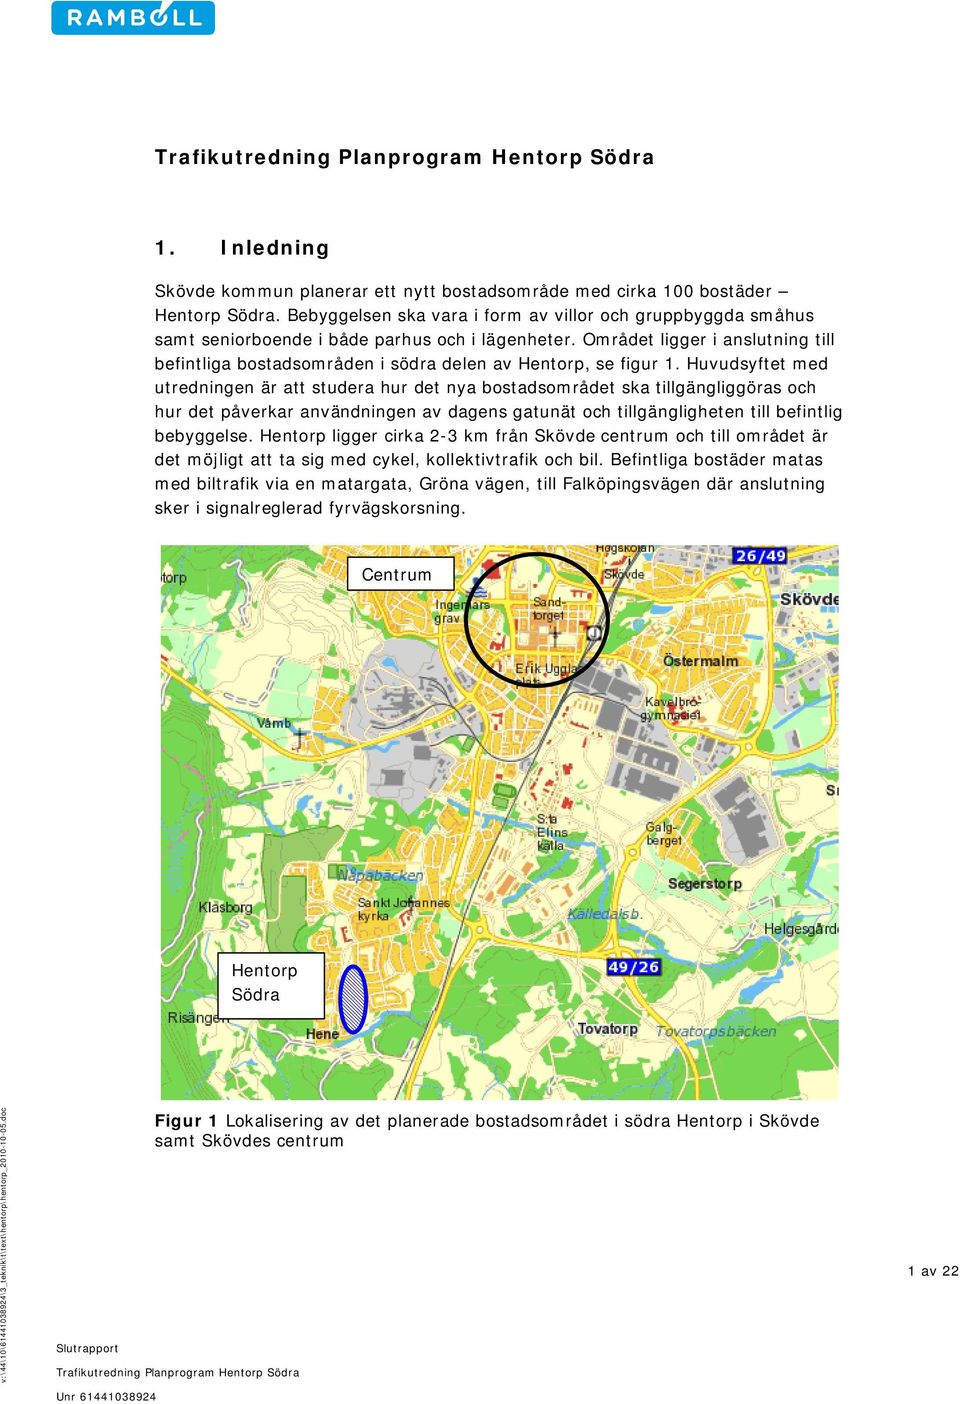 Området ligger i anslutning till befintliga bostadsområden i södra delen av Hentorp, se figur 1.